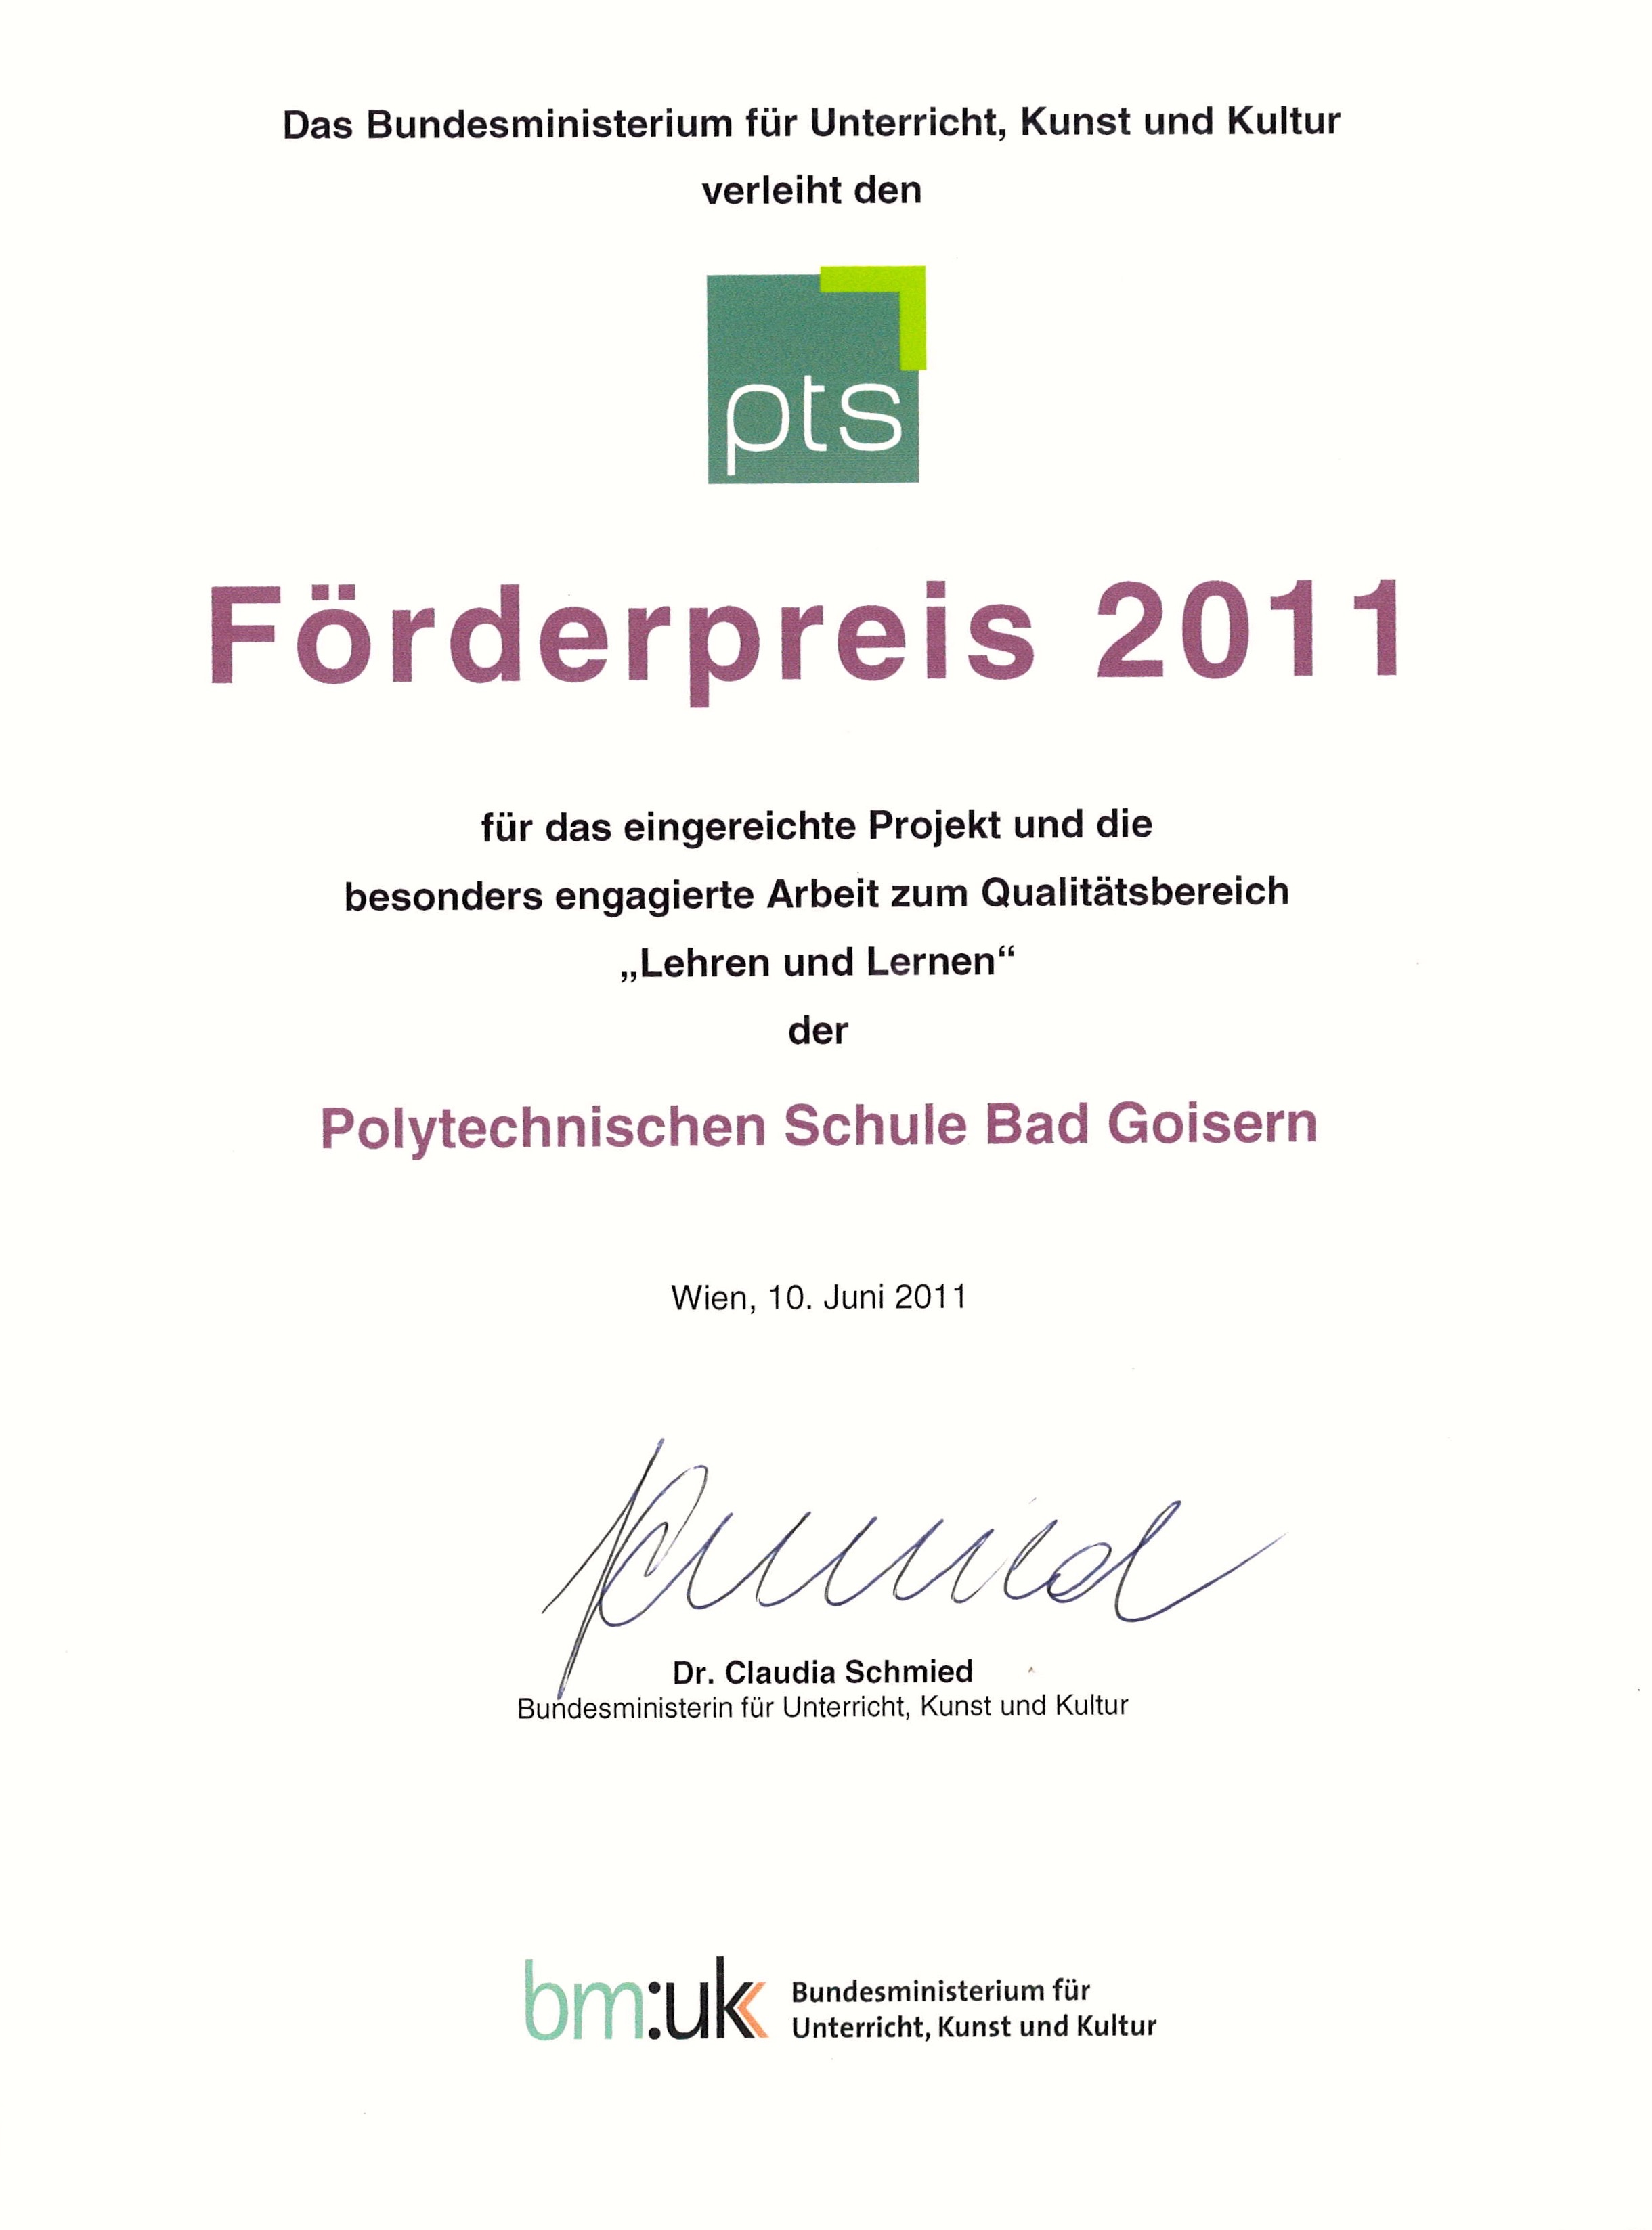 Frderpreis 2011